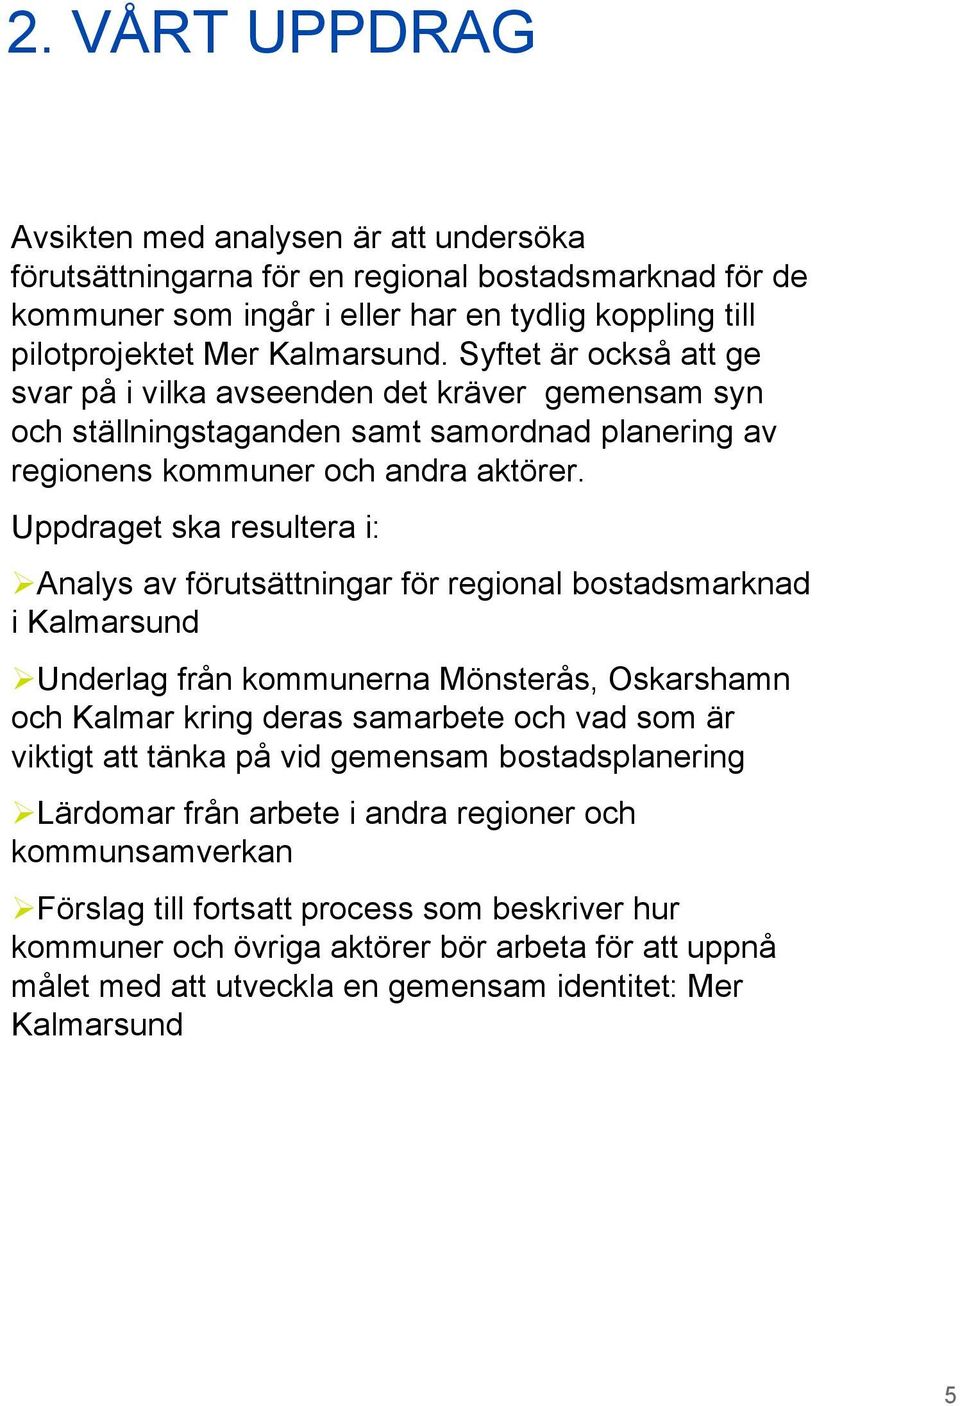 Uppdraget ska resultera i: Analys av förutsättningar för regional bostadsmarknad i Kalmarsund Underlag från kommunerna Mönsterås, Oskarshamn och Kalmar kring deras samarbete och vad som är viktigt